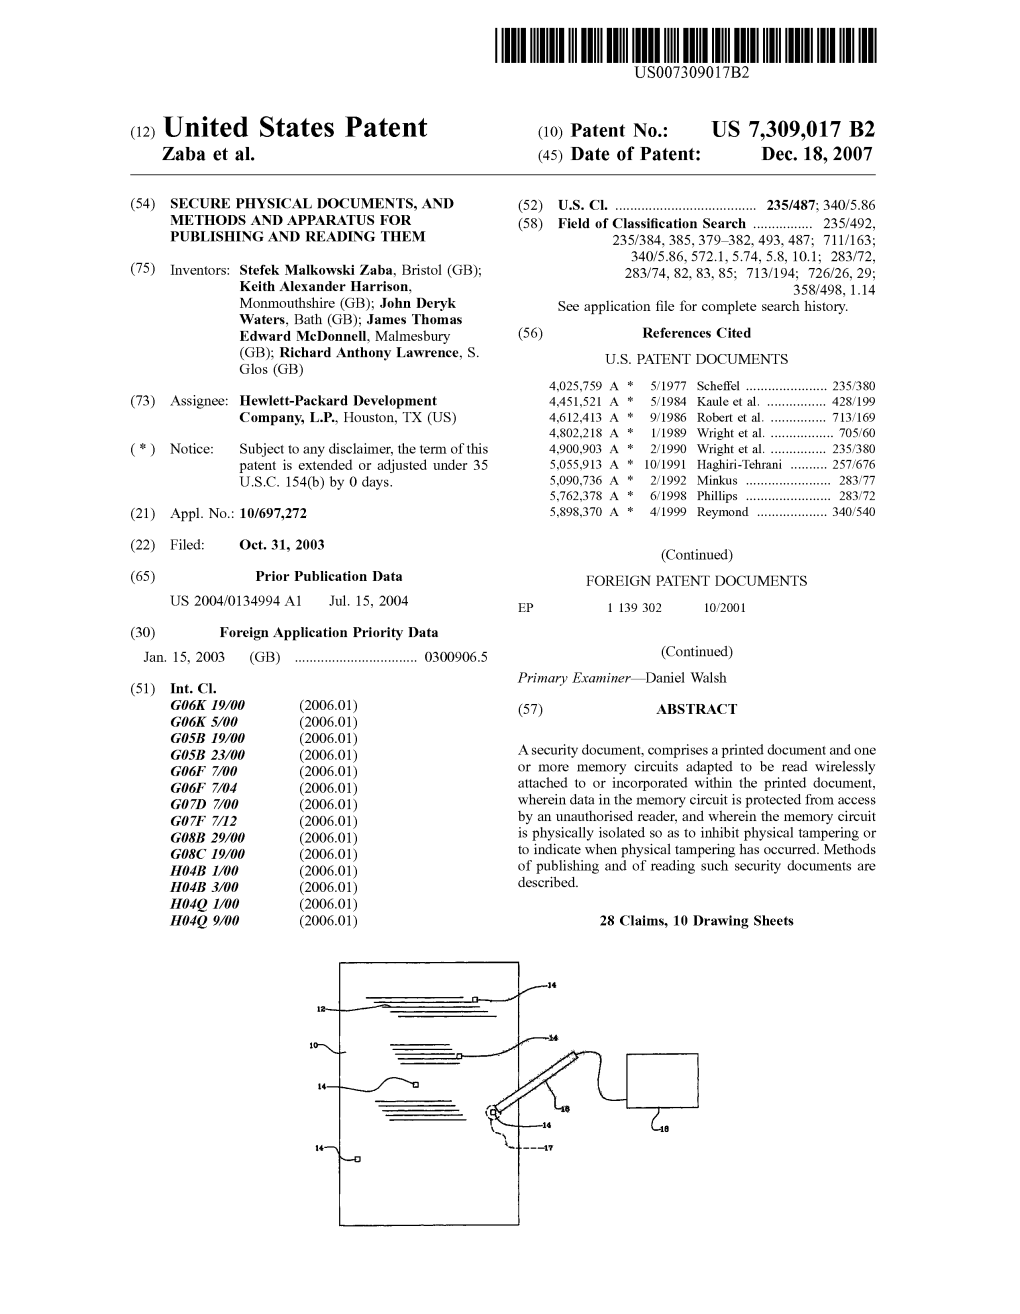 (12) United States Patent (10) Patent No.: US 7,309,017 B2 Zaba Et Al